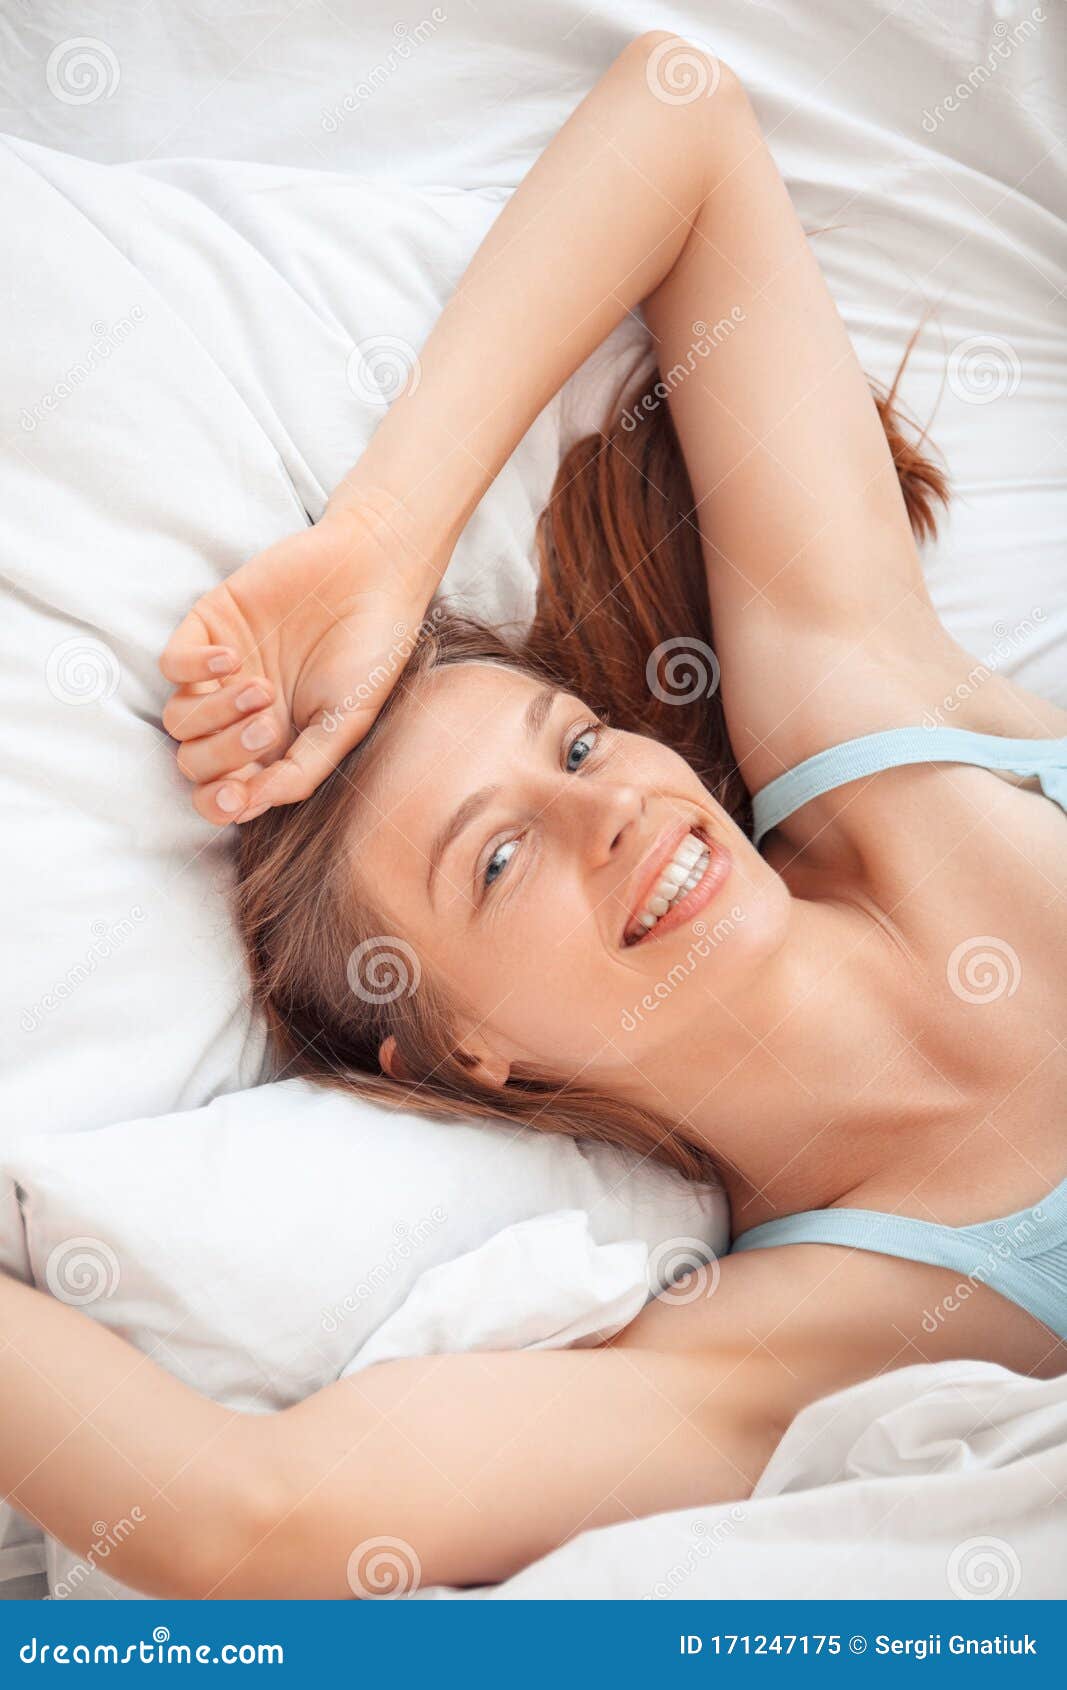 women in bed selfie free photo